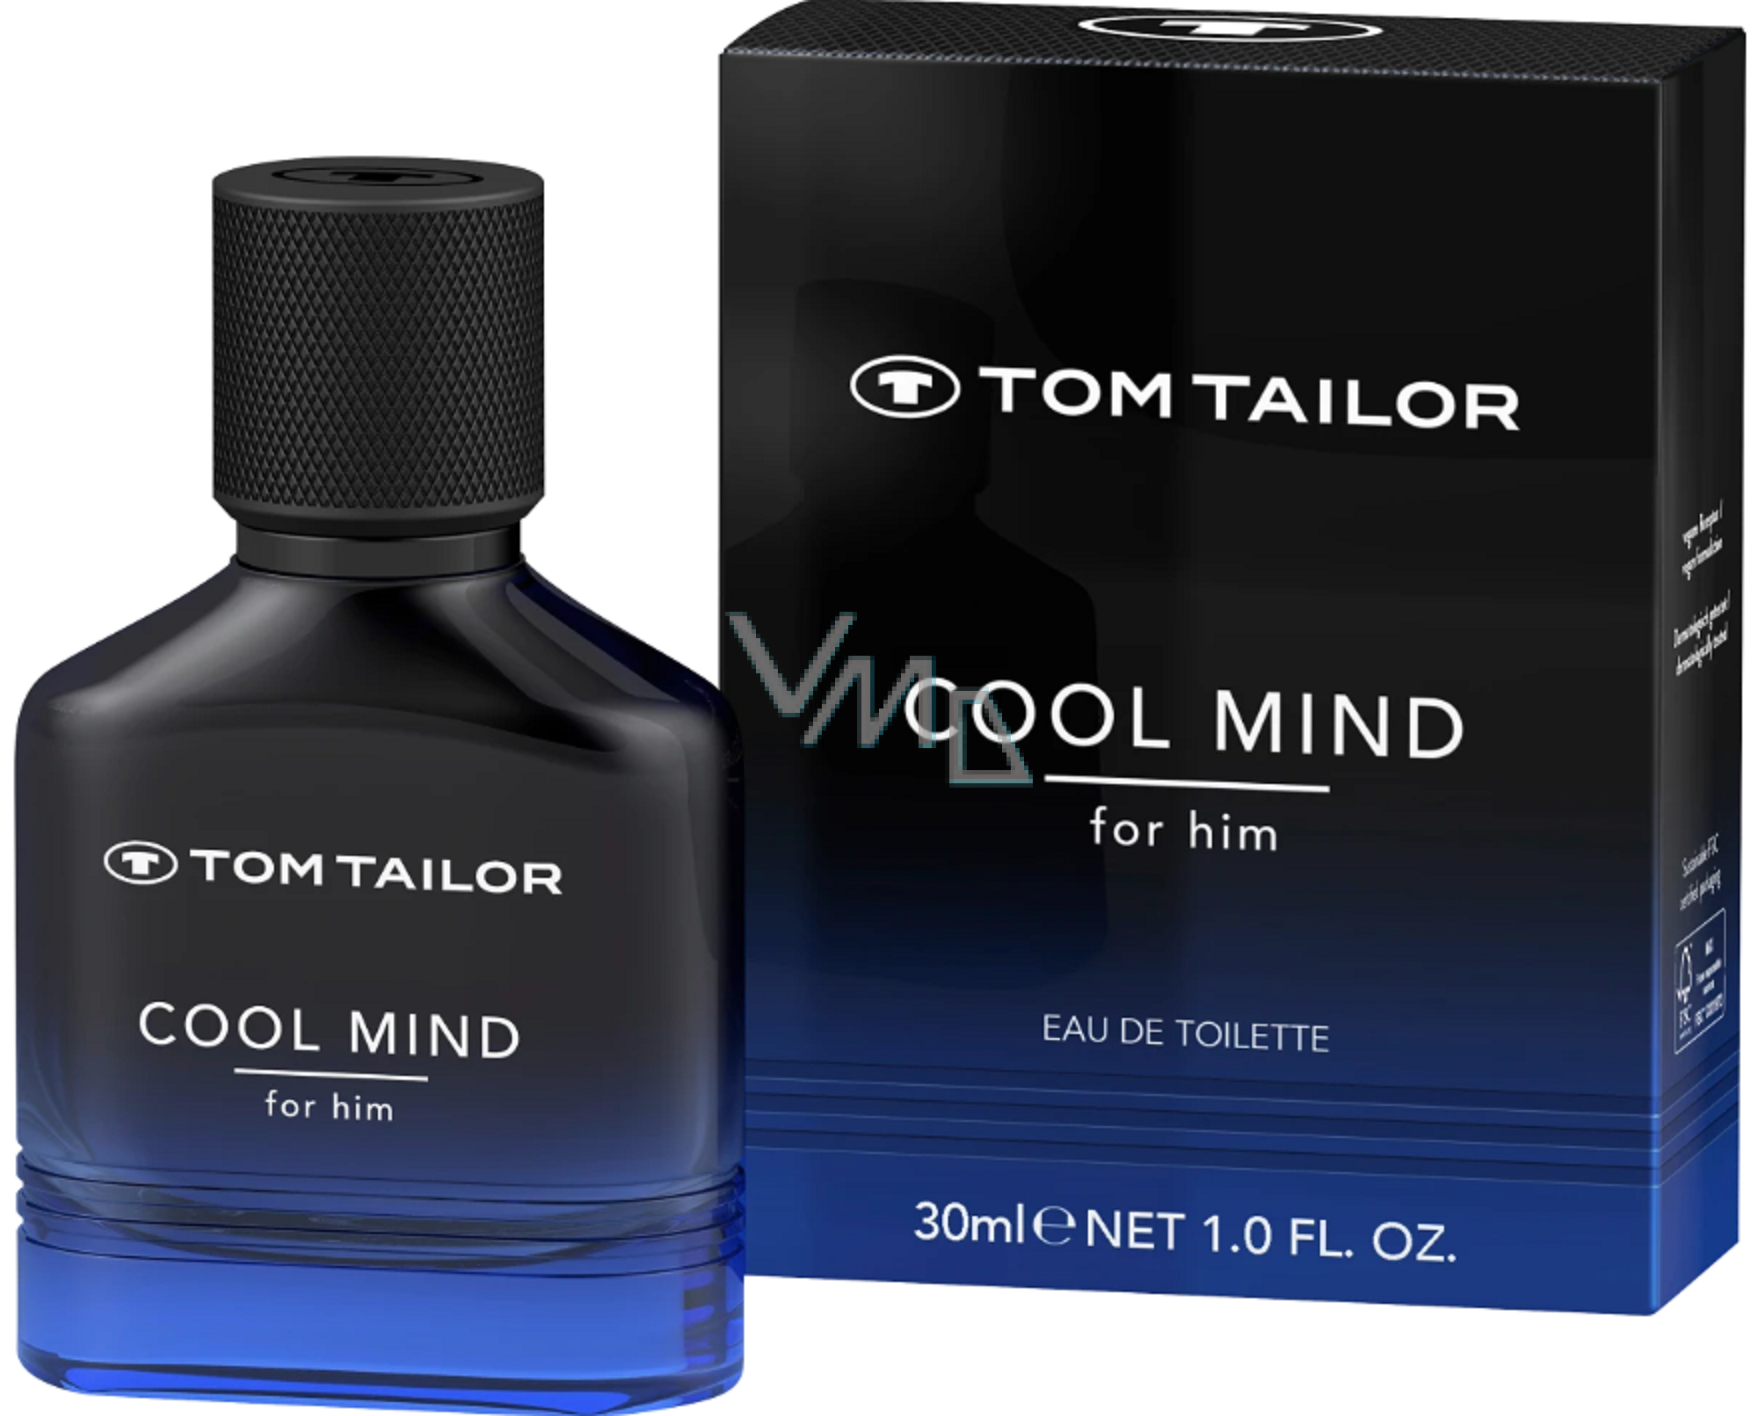 Tom Tailor Cool Mind For Him Eau de Toilette for men 30 ml - VMD parfumerie  - drogerie